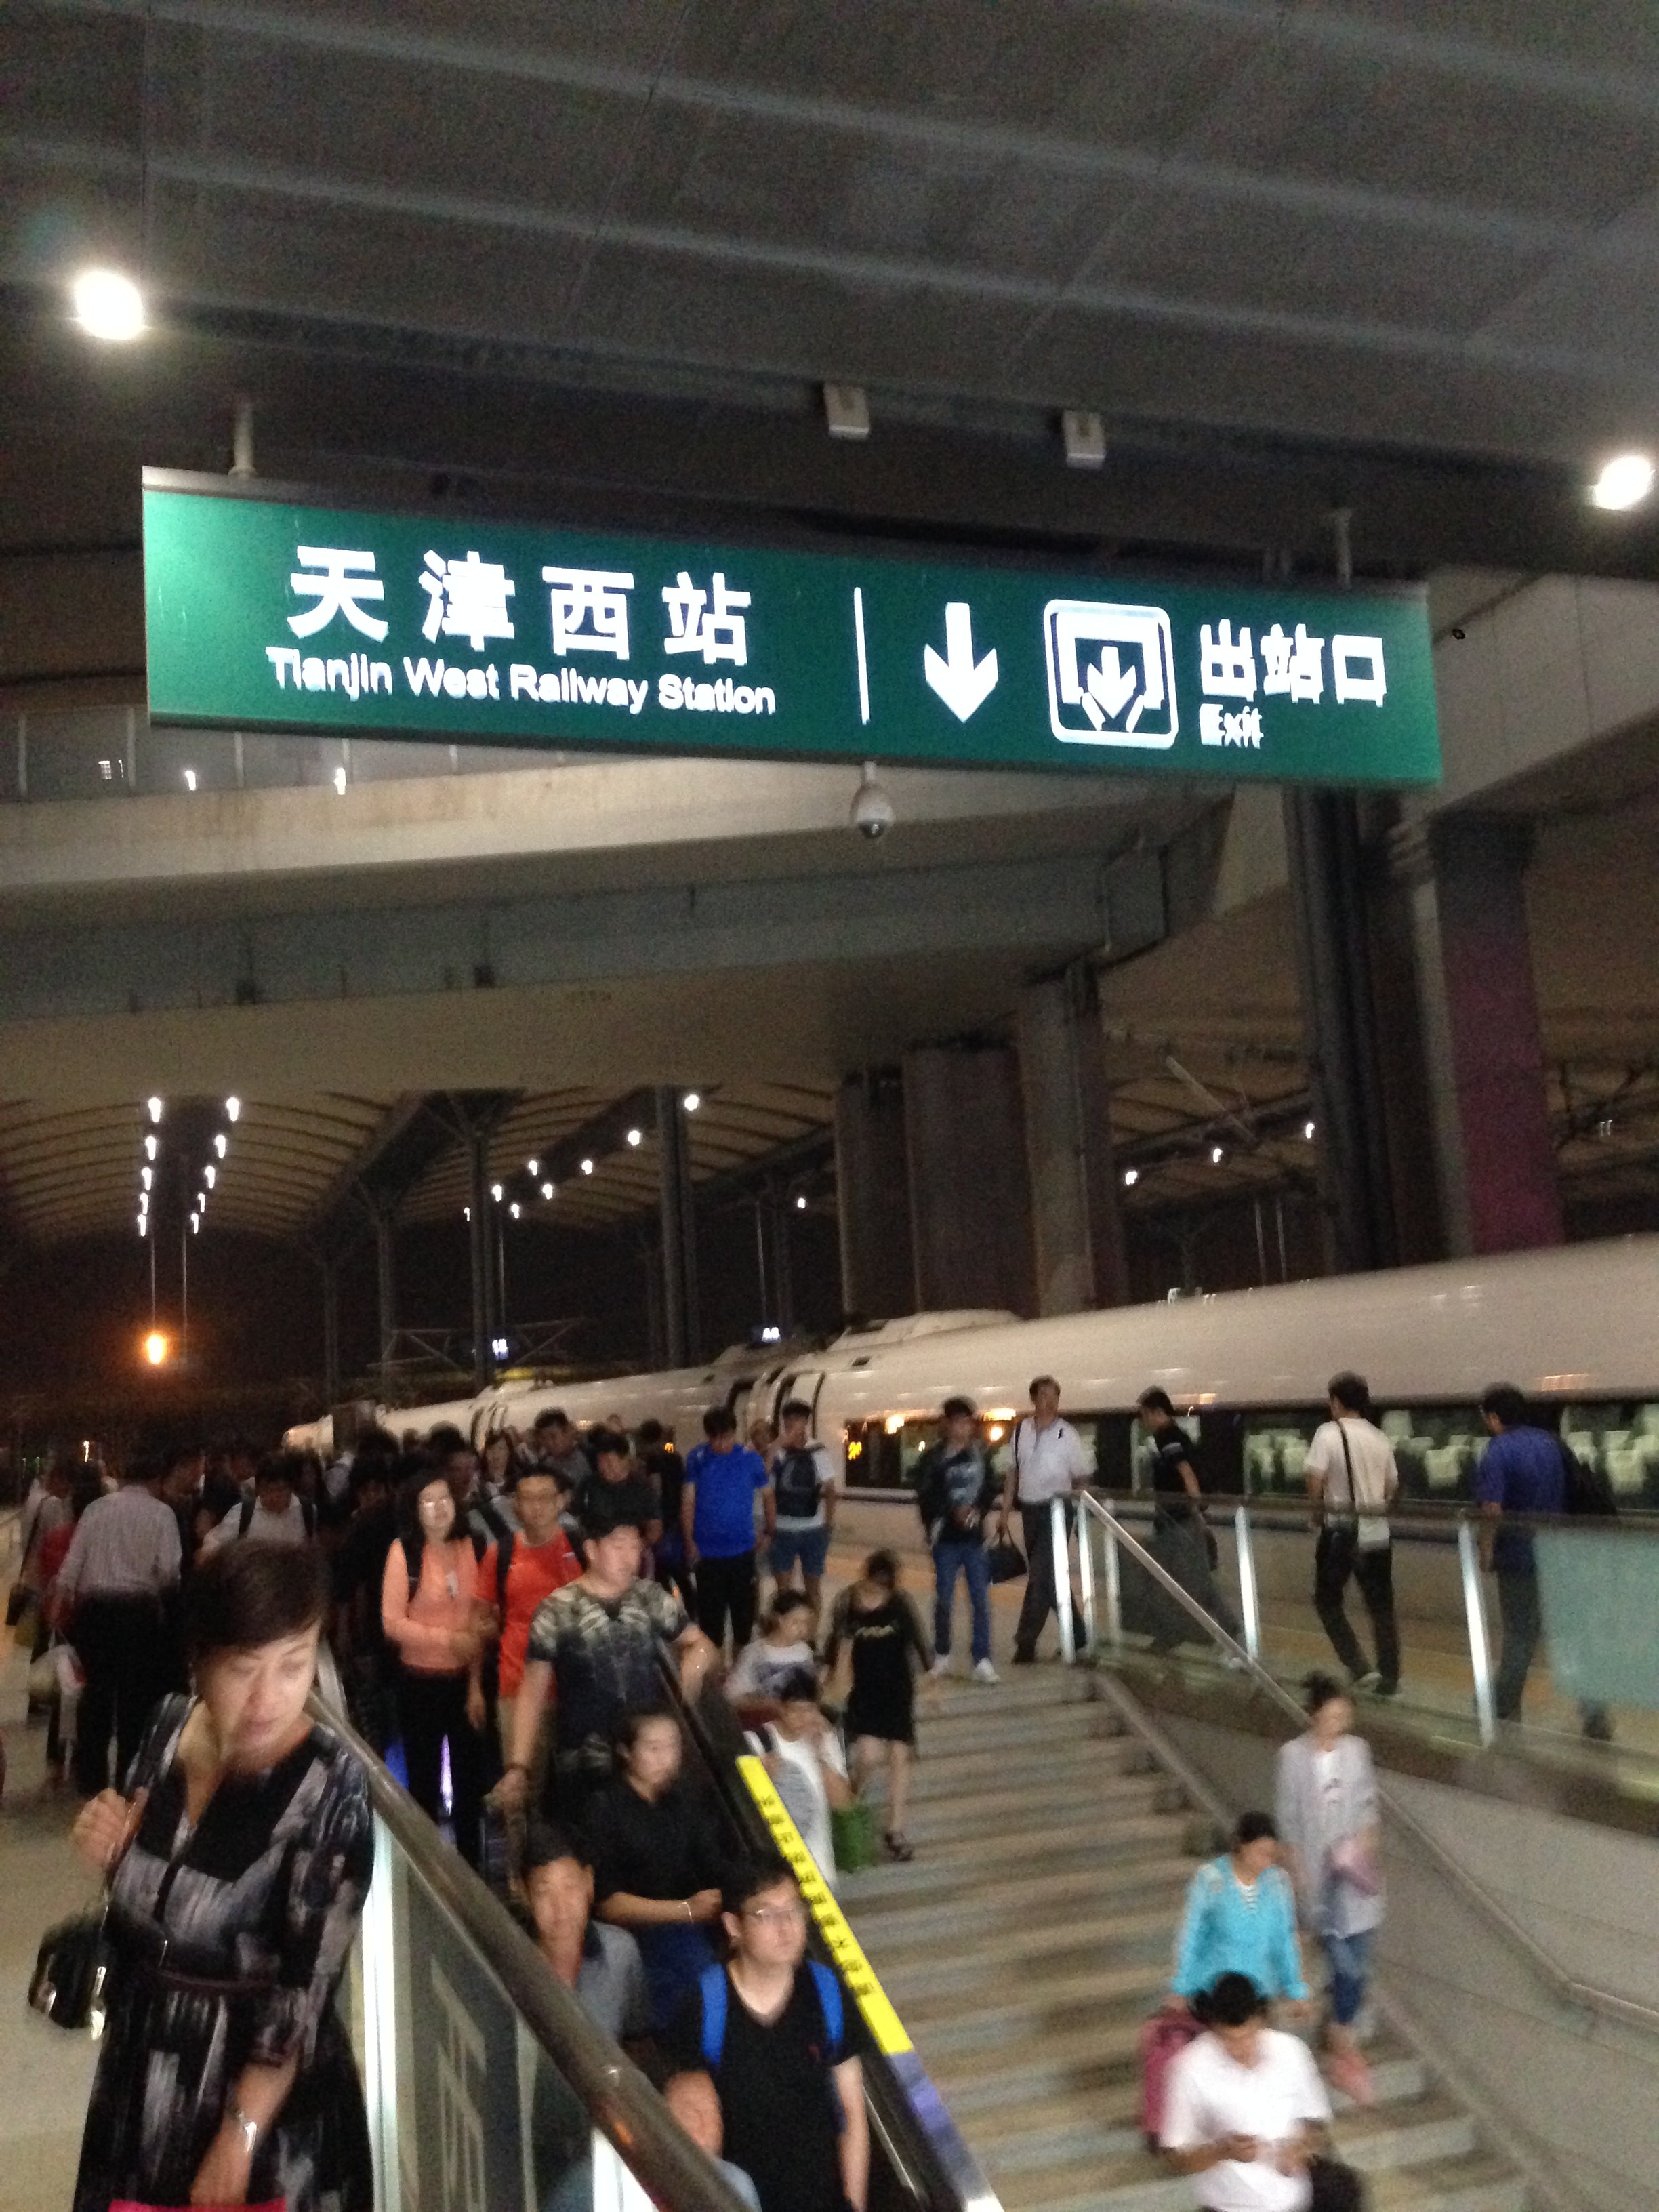 可以停靠动车和高铁,和地铁相连,可以通过地铁和天津站实现换乘,不过